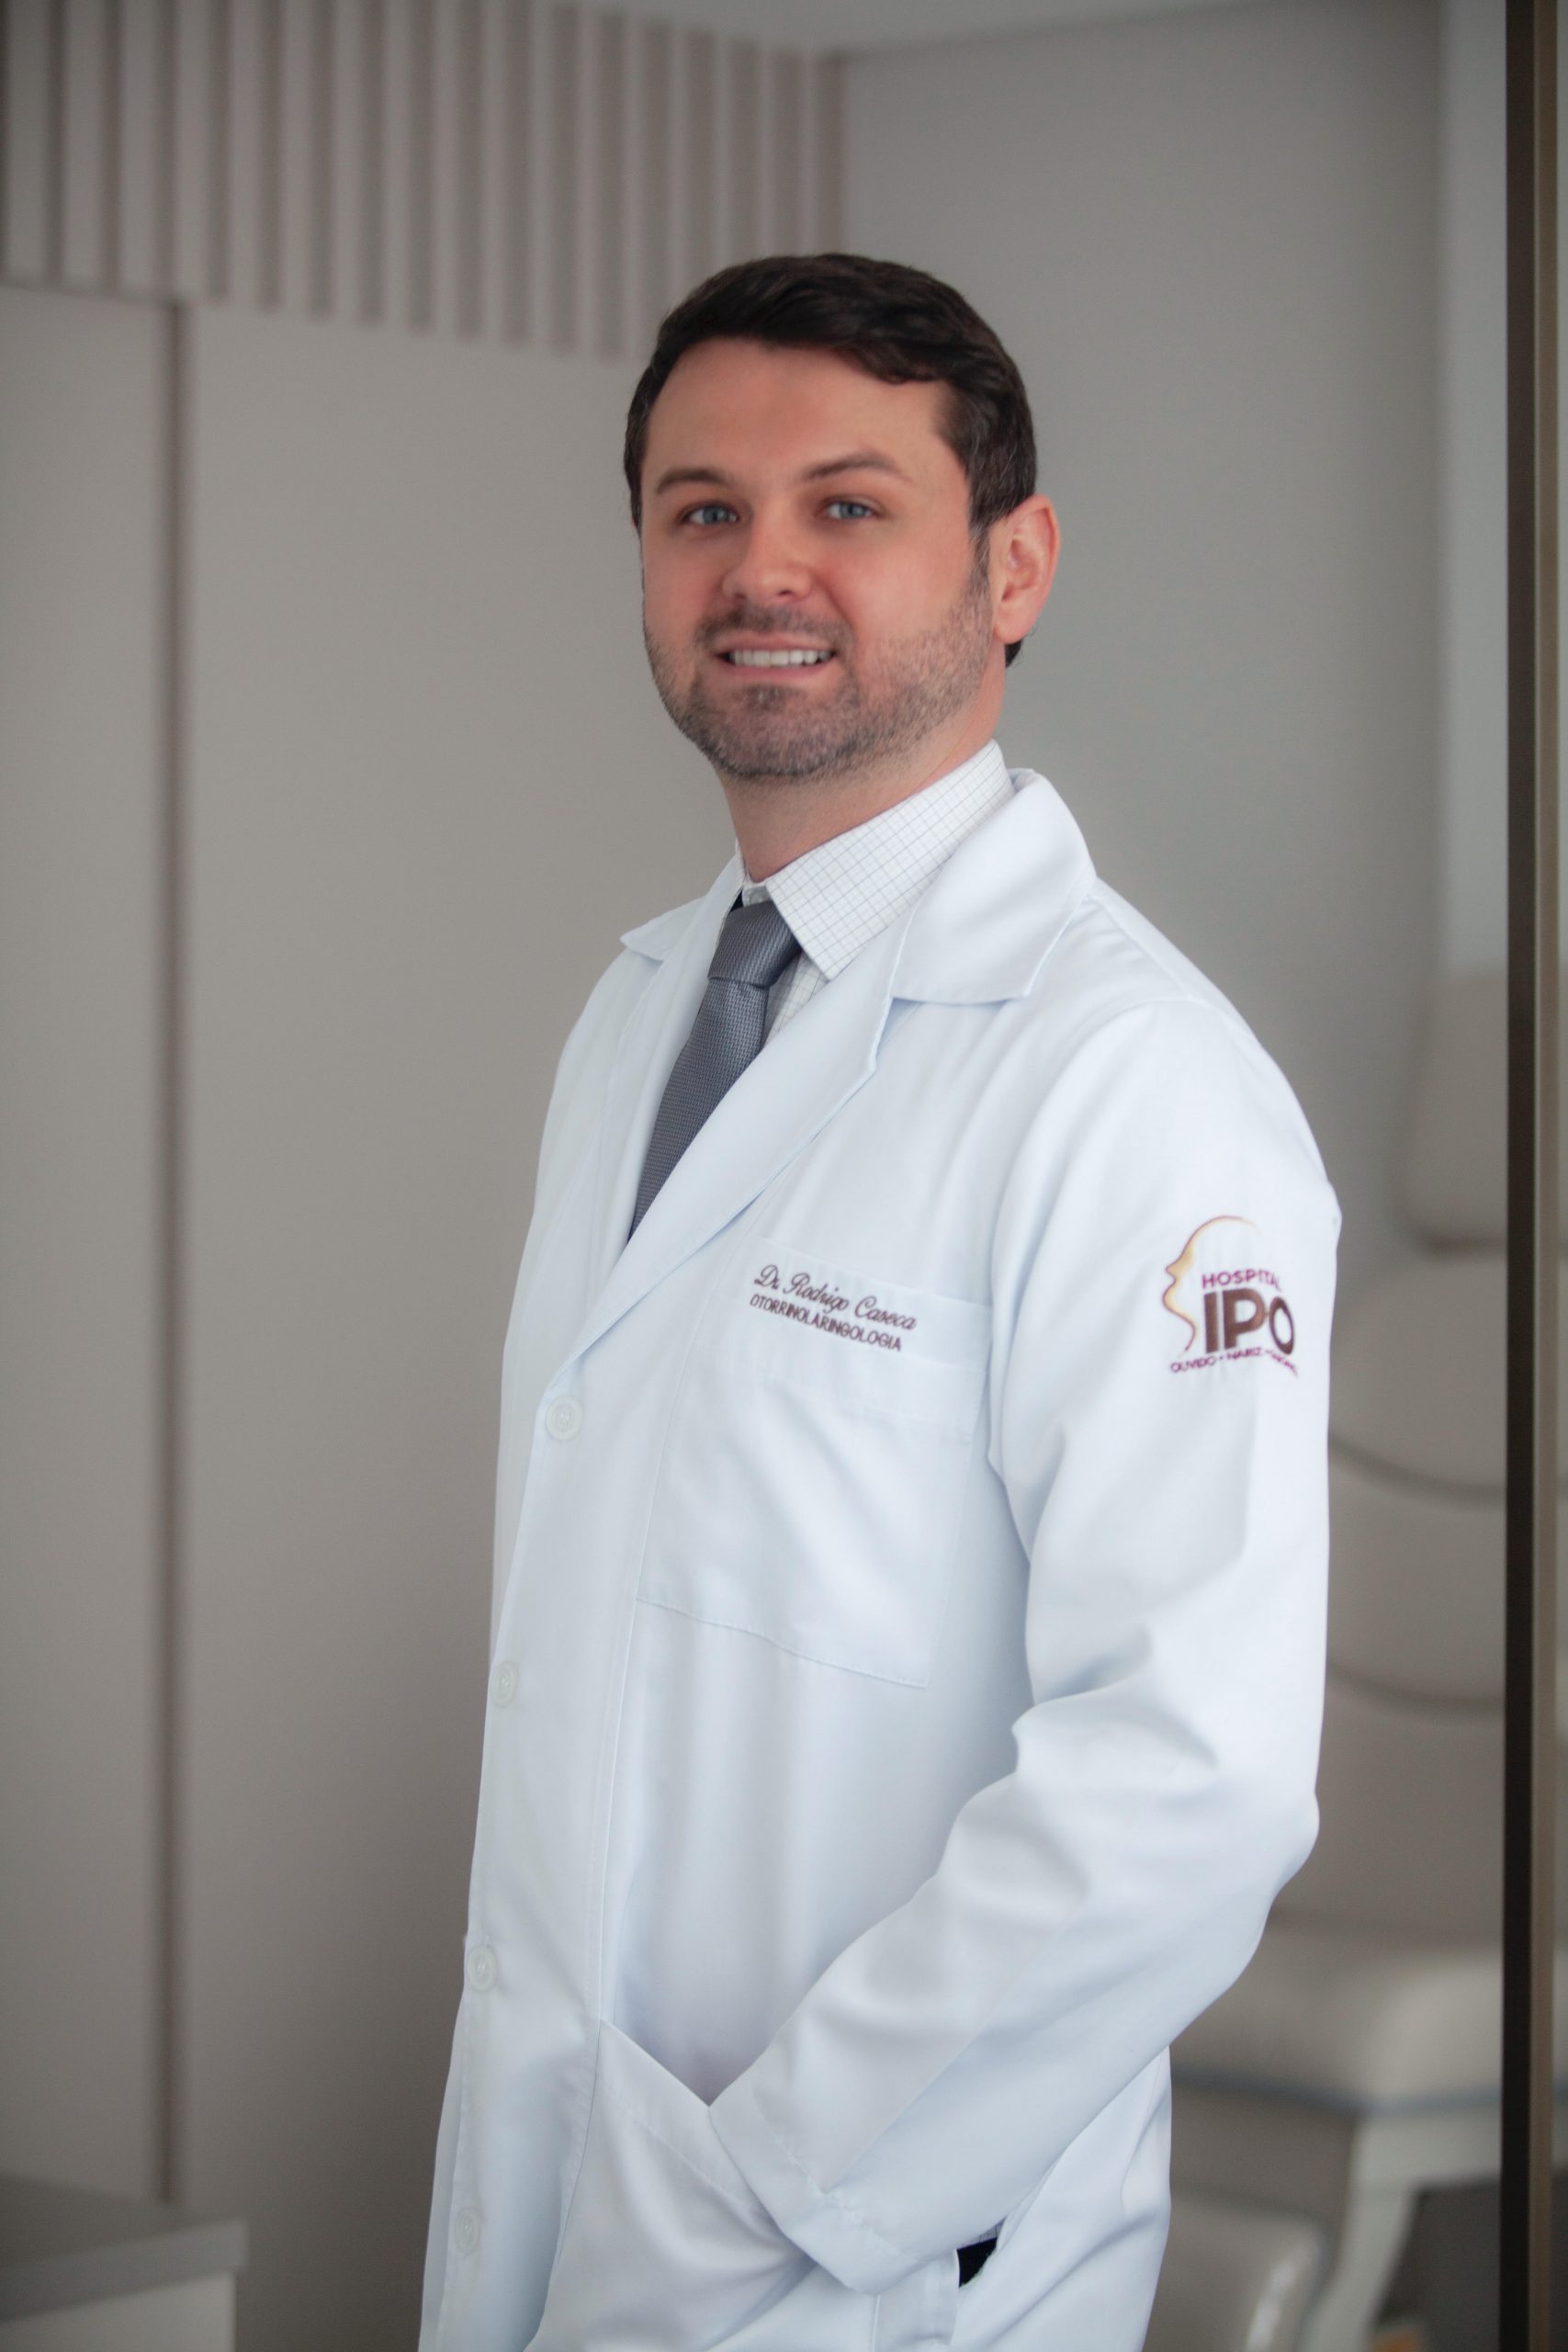 Dicas de Saúde com “Dr. Rodrigo Caseca”: Tem um grilo no meu ouvido!